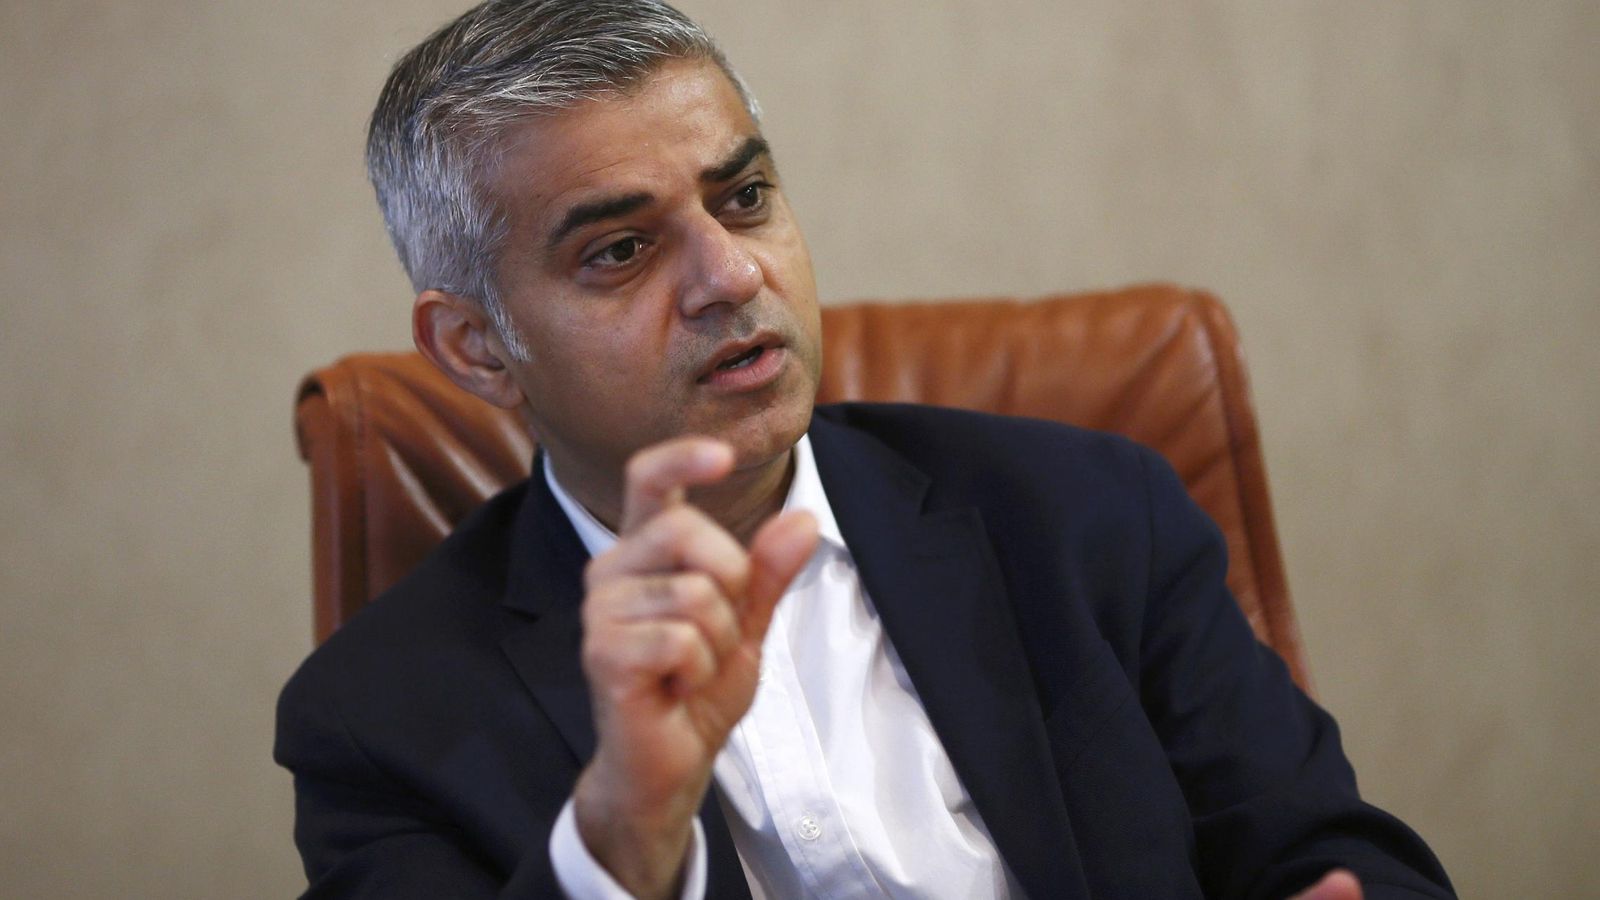 Foto: El candidato laborista a la alcaldía de Londres, Sadiq Khan, durante una entrevista. (Reuters) 